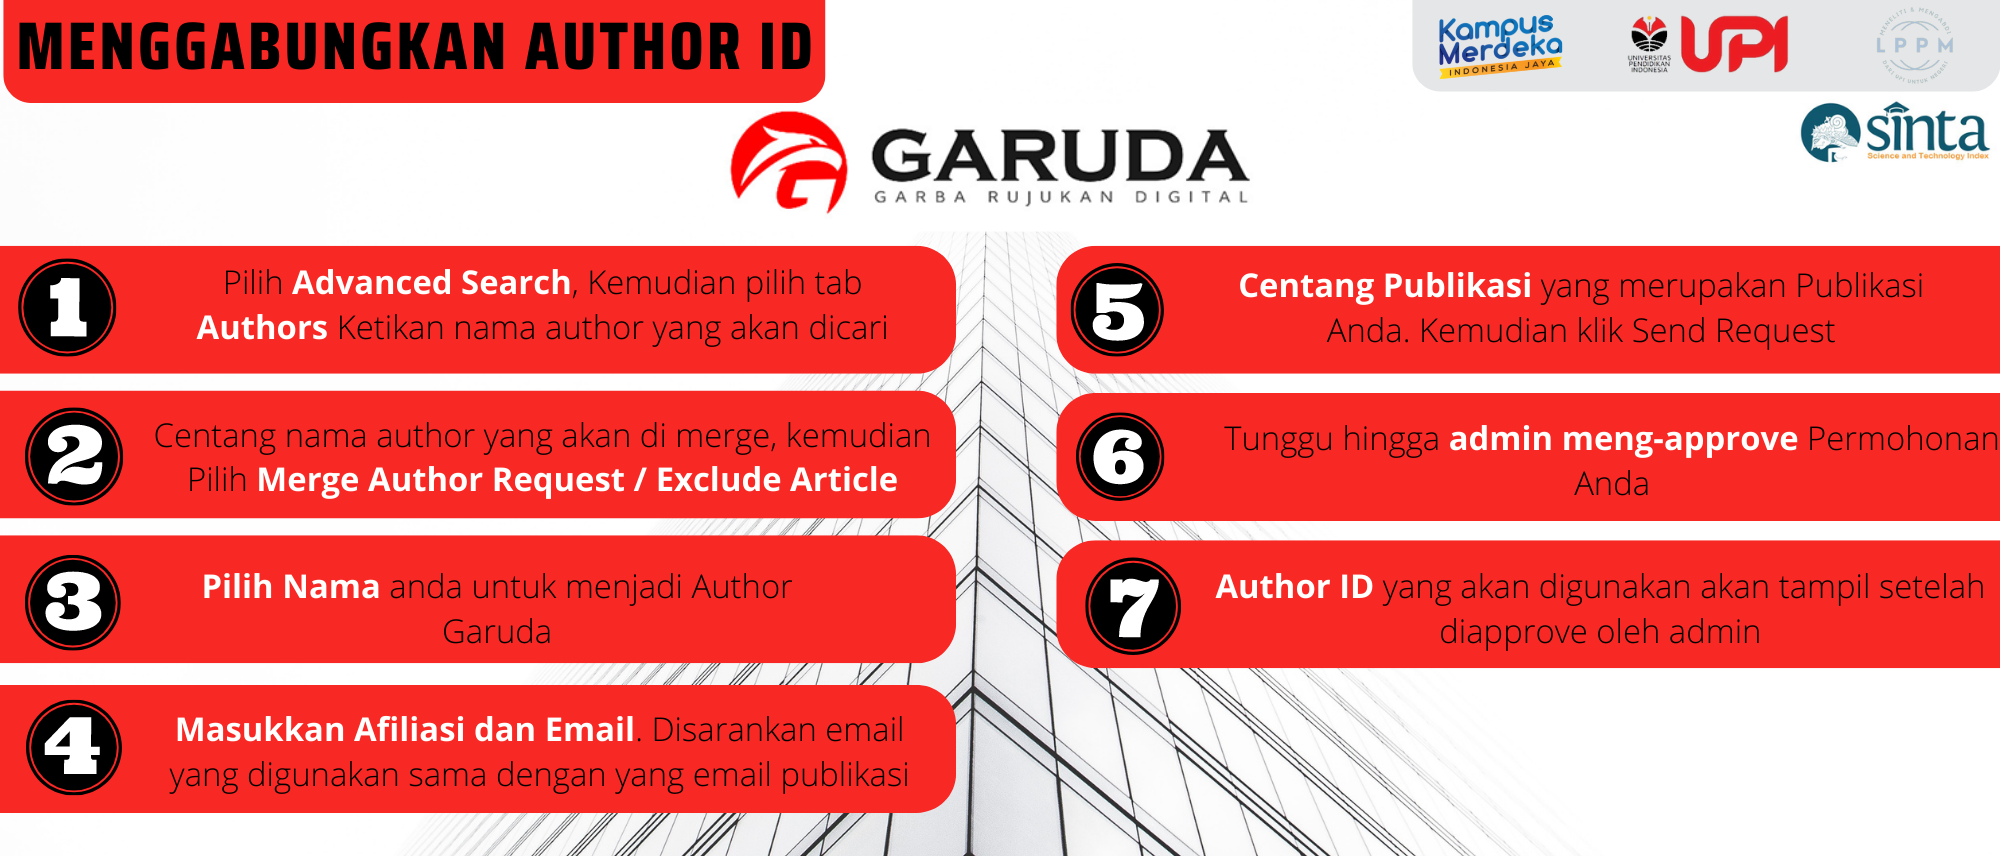 Menggabungkan Author ID Garuda